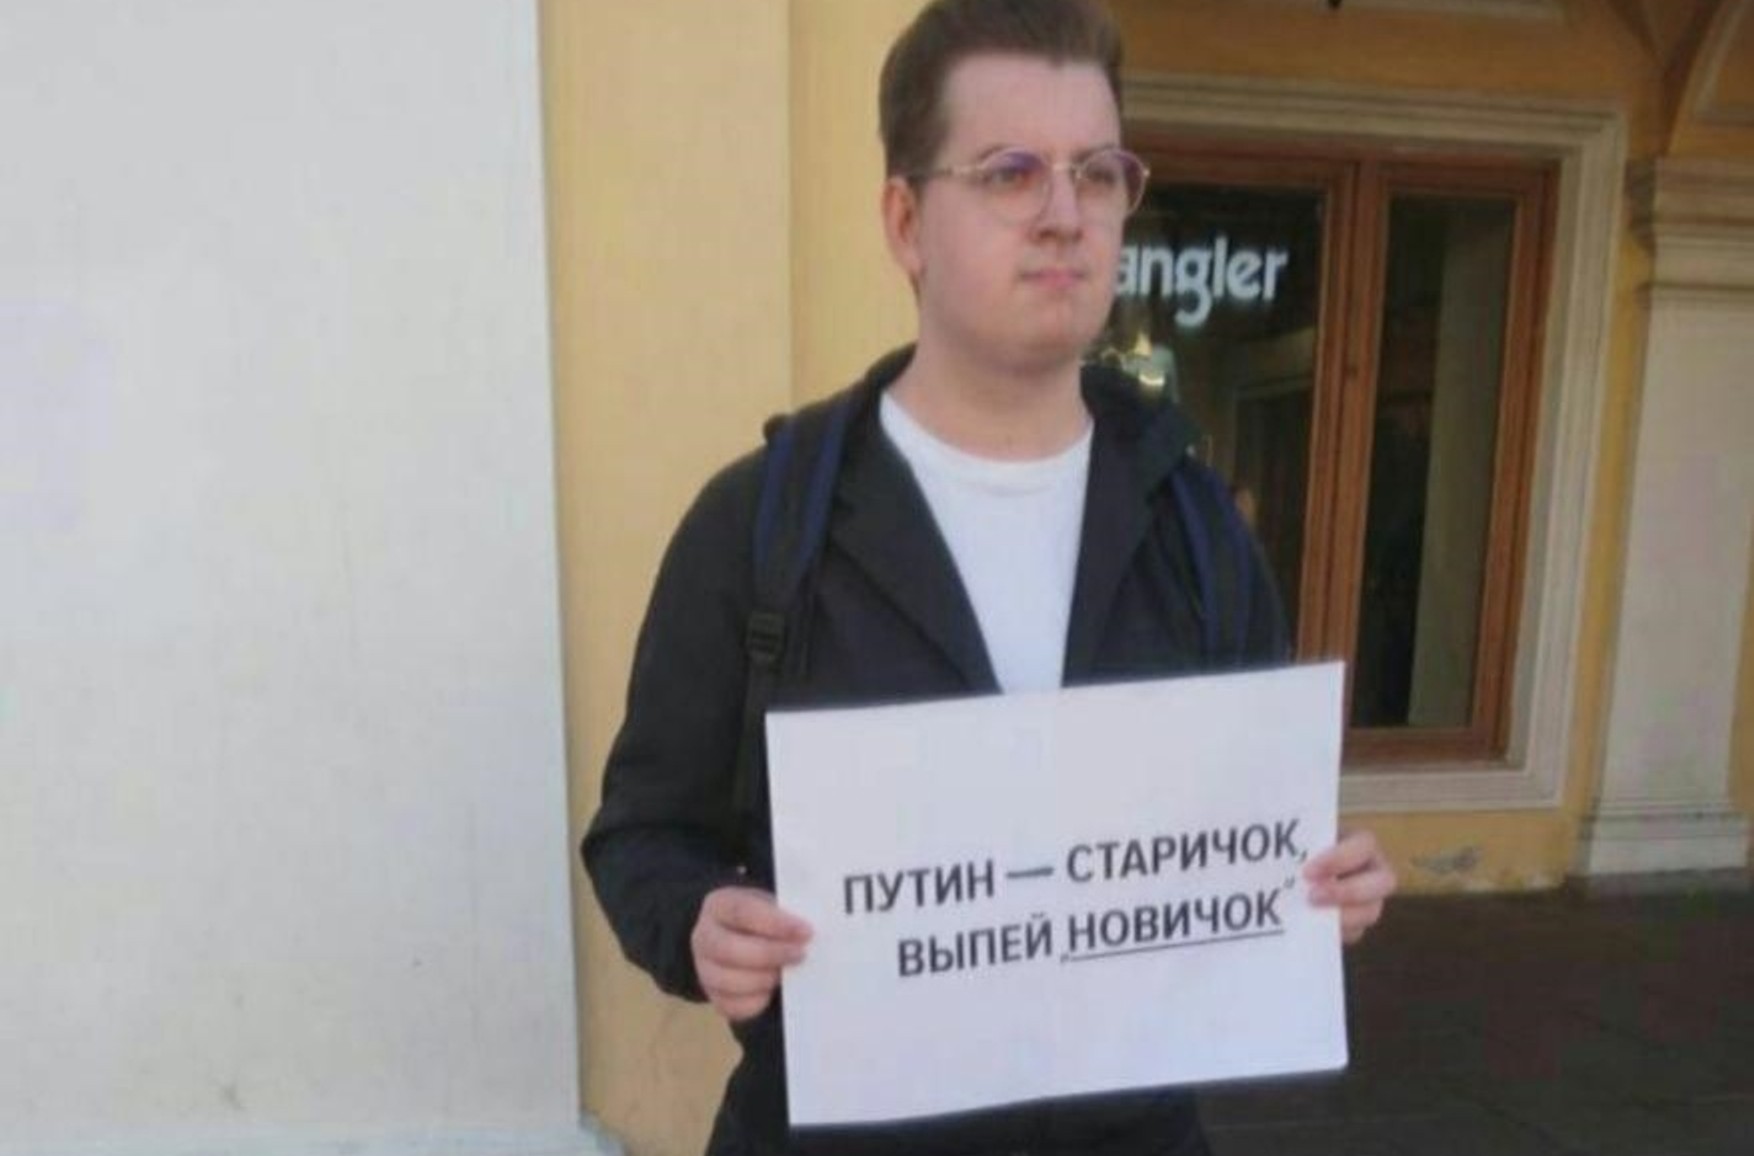 У Санкт-Петербурзі затримали активіста з плакатом «Путін - дідок, випий